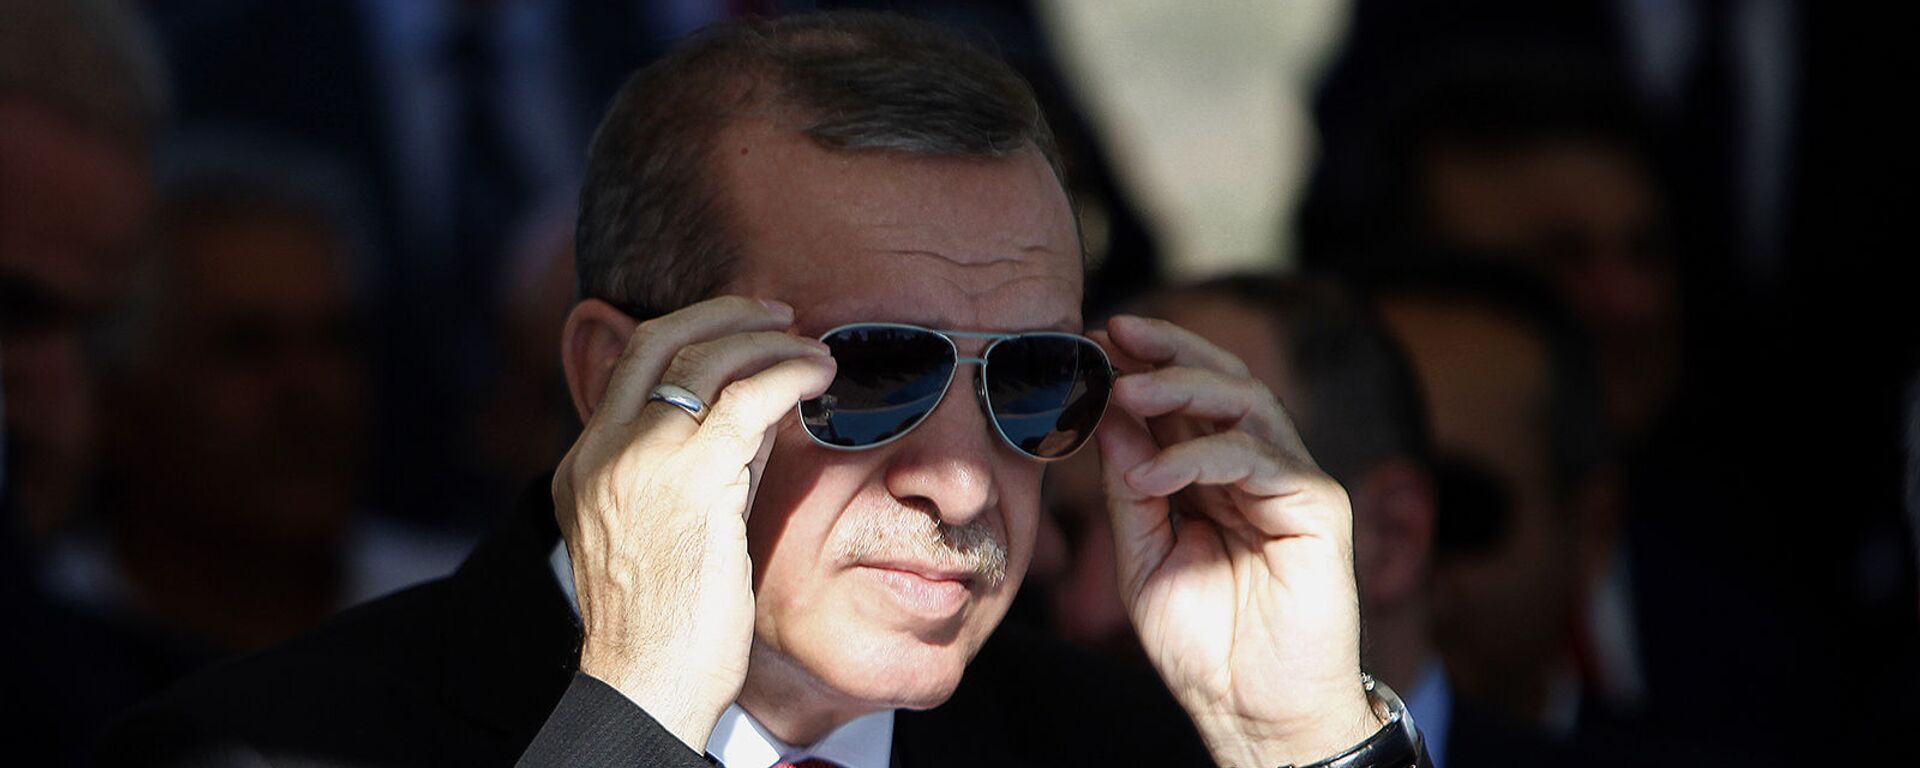 Президент Турции Реджеп Тайип Эрдоган поправляет солнцезащитные очки - Sputnik Армения, 1920, 13.07.2021